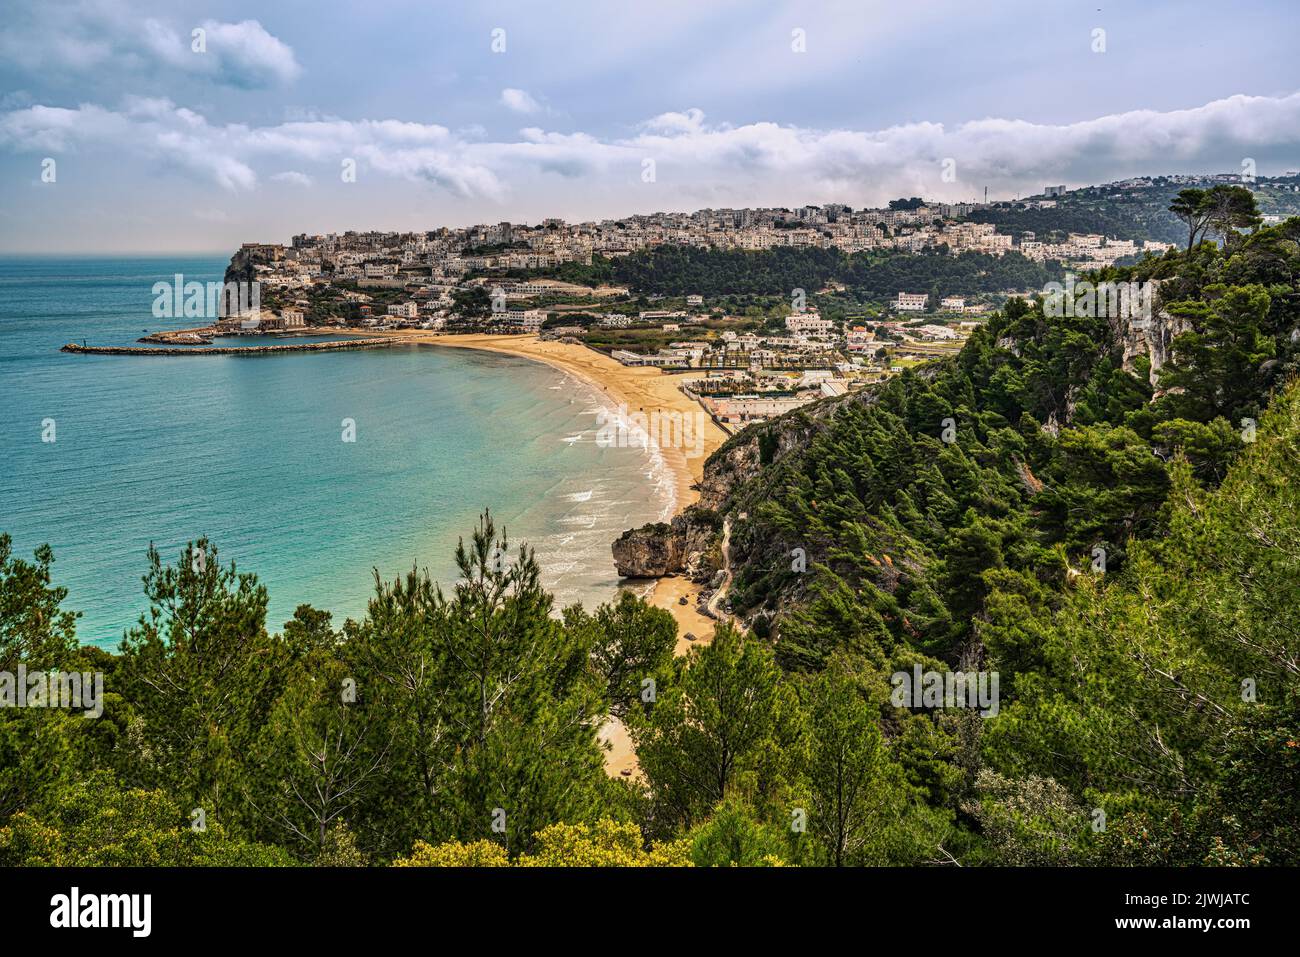 Paisaje de la bahía con la playa de arena y la ciudad turística de Peschici encaramado en los acantilados con vistas al mar Adriático. Peschici, Apulia Foto de stock